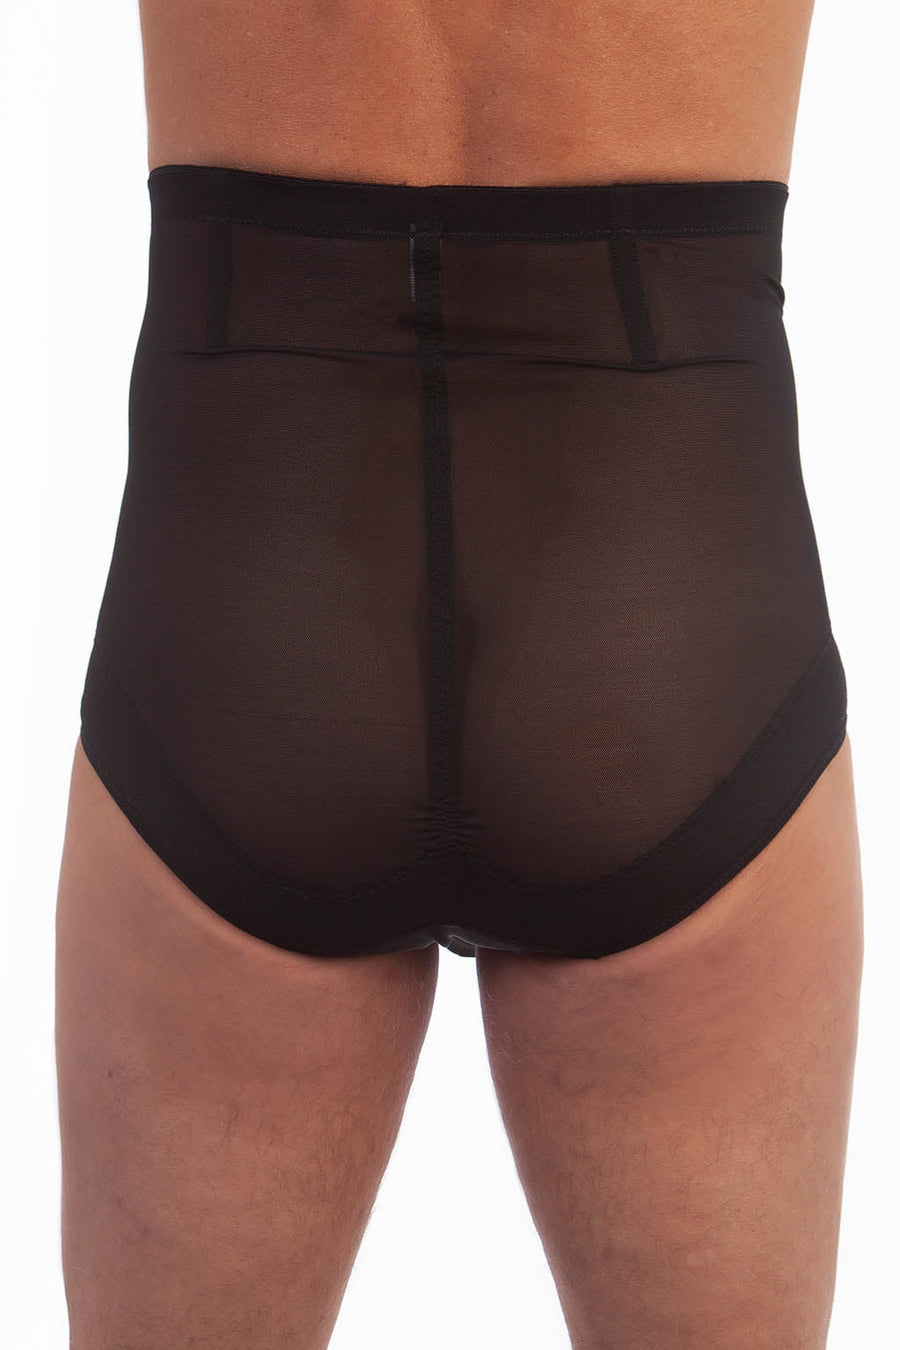 BfM Mens High Waist Pouch Corset Brief Tummy Control Underwear – Bodywear  for Men